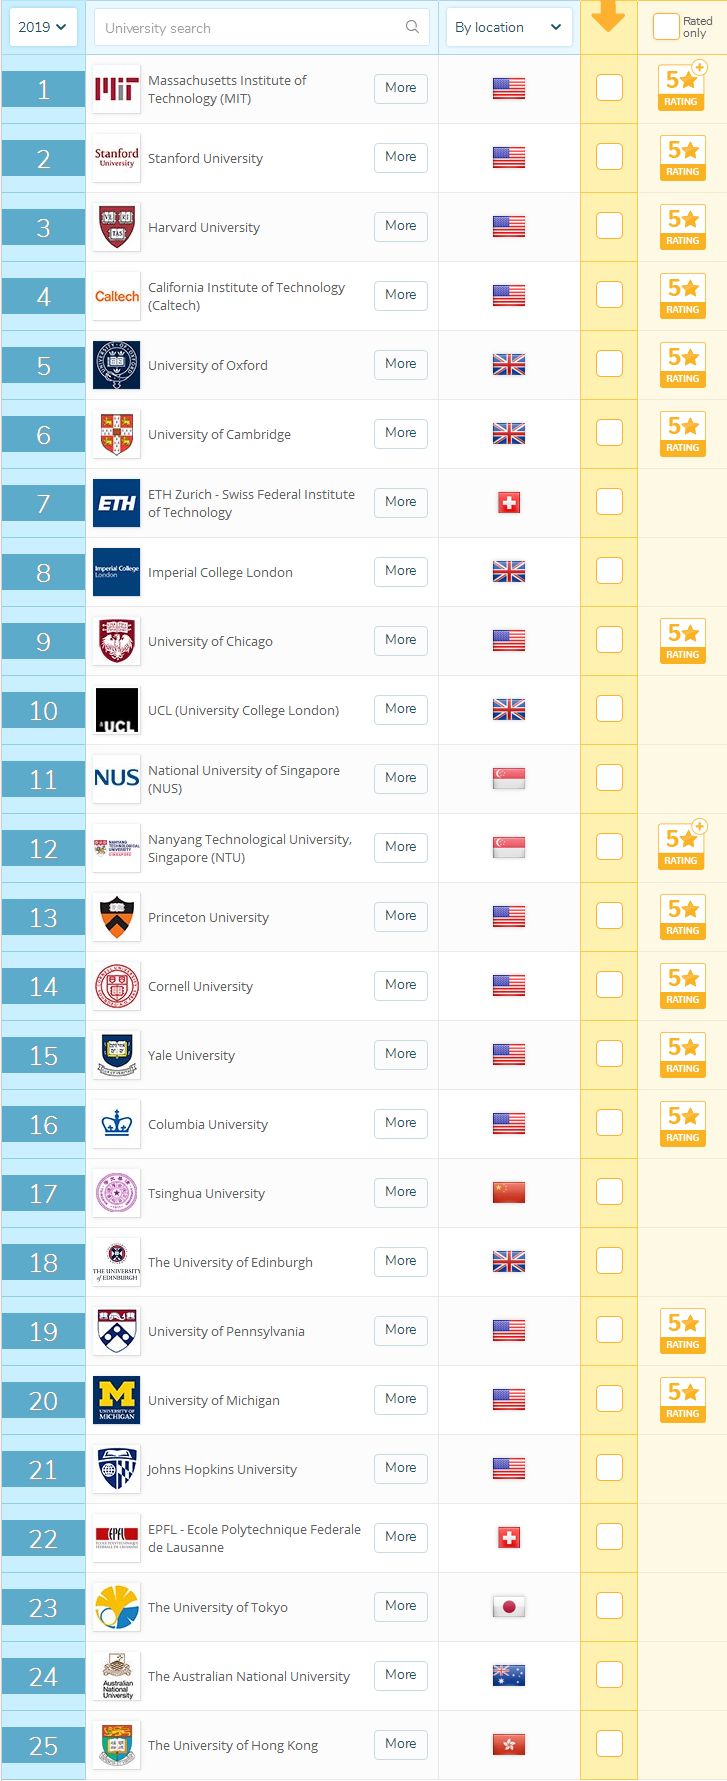 必看!2019QS世界大学排名今日公布,看各国如